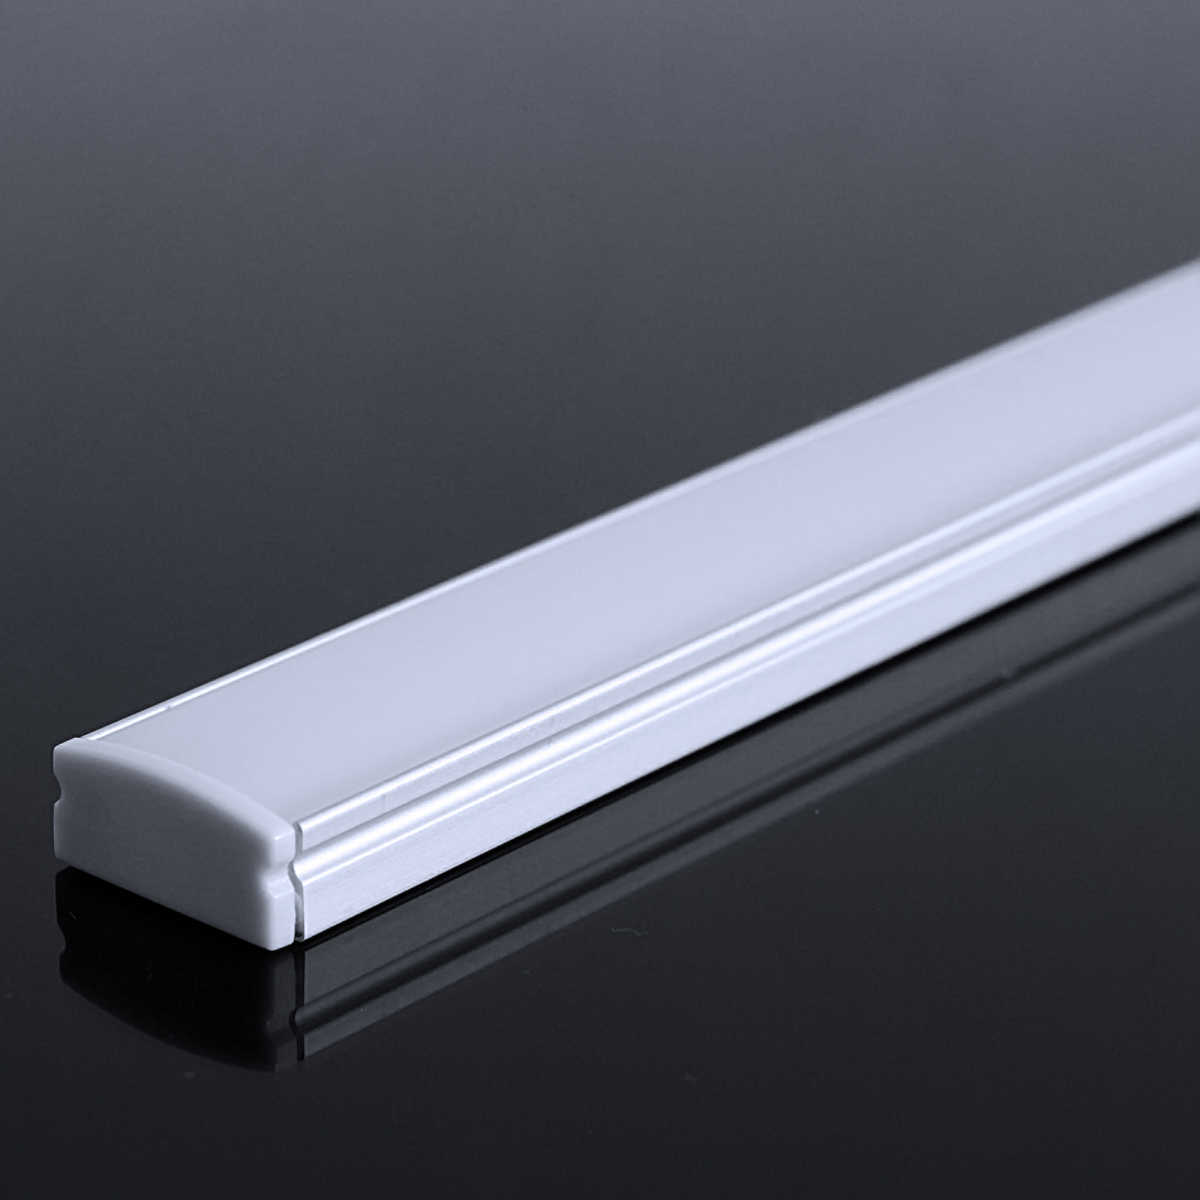 LED Flachprofil "Slim-Line" | Abdeckung diffus | Zuschnitt auf 14cm |